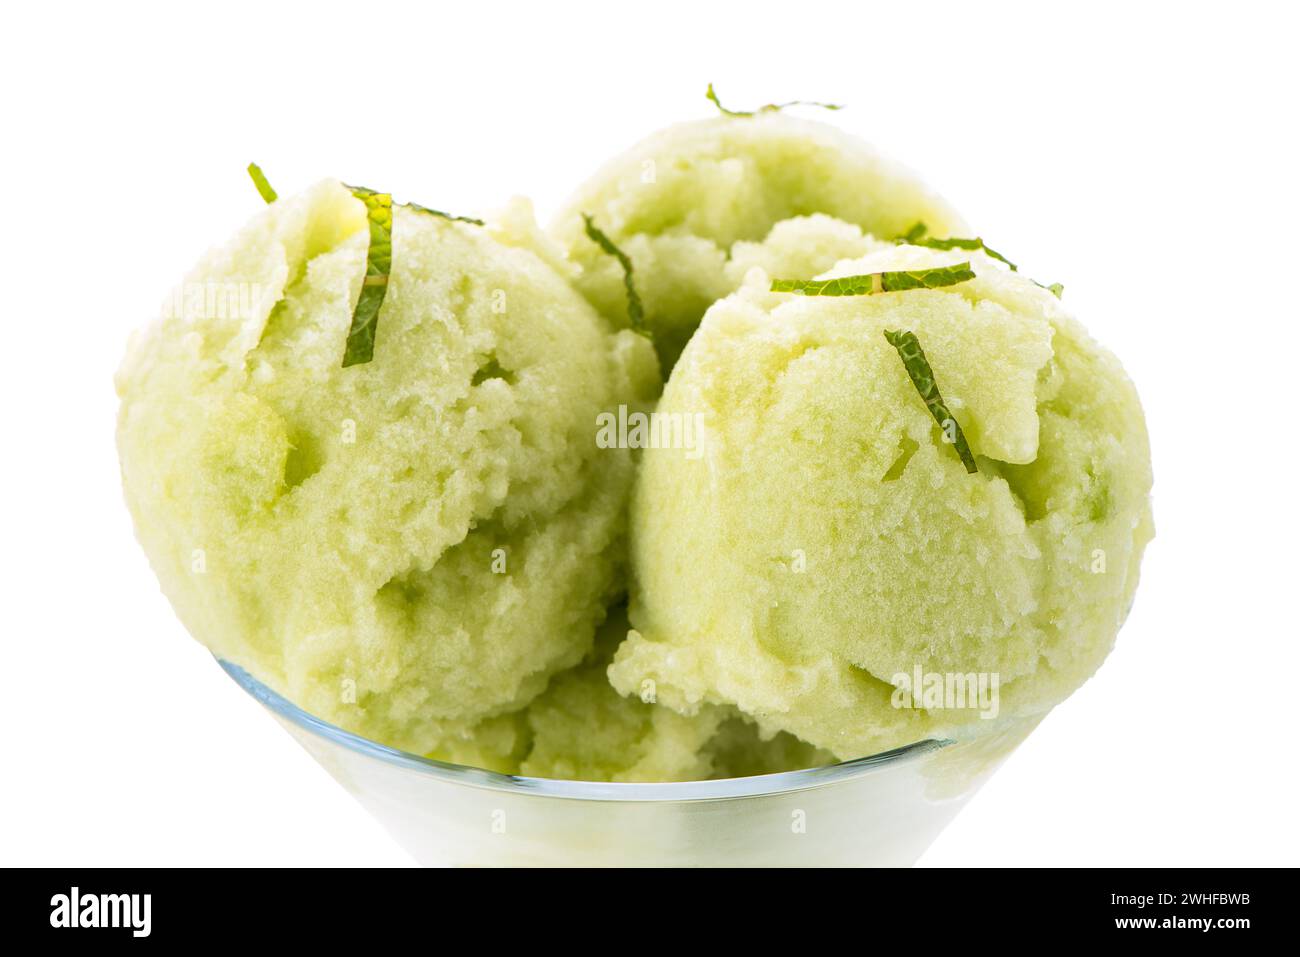 Melon flavored ice-cream Stock Photo